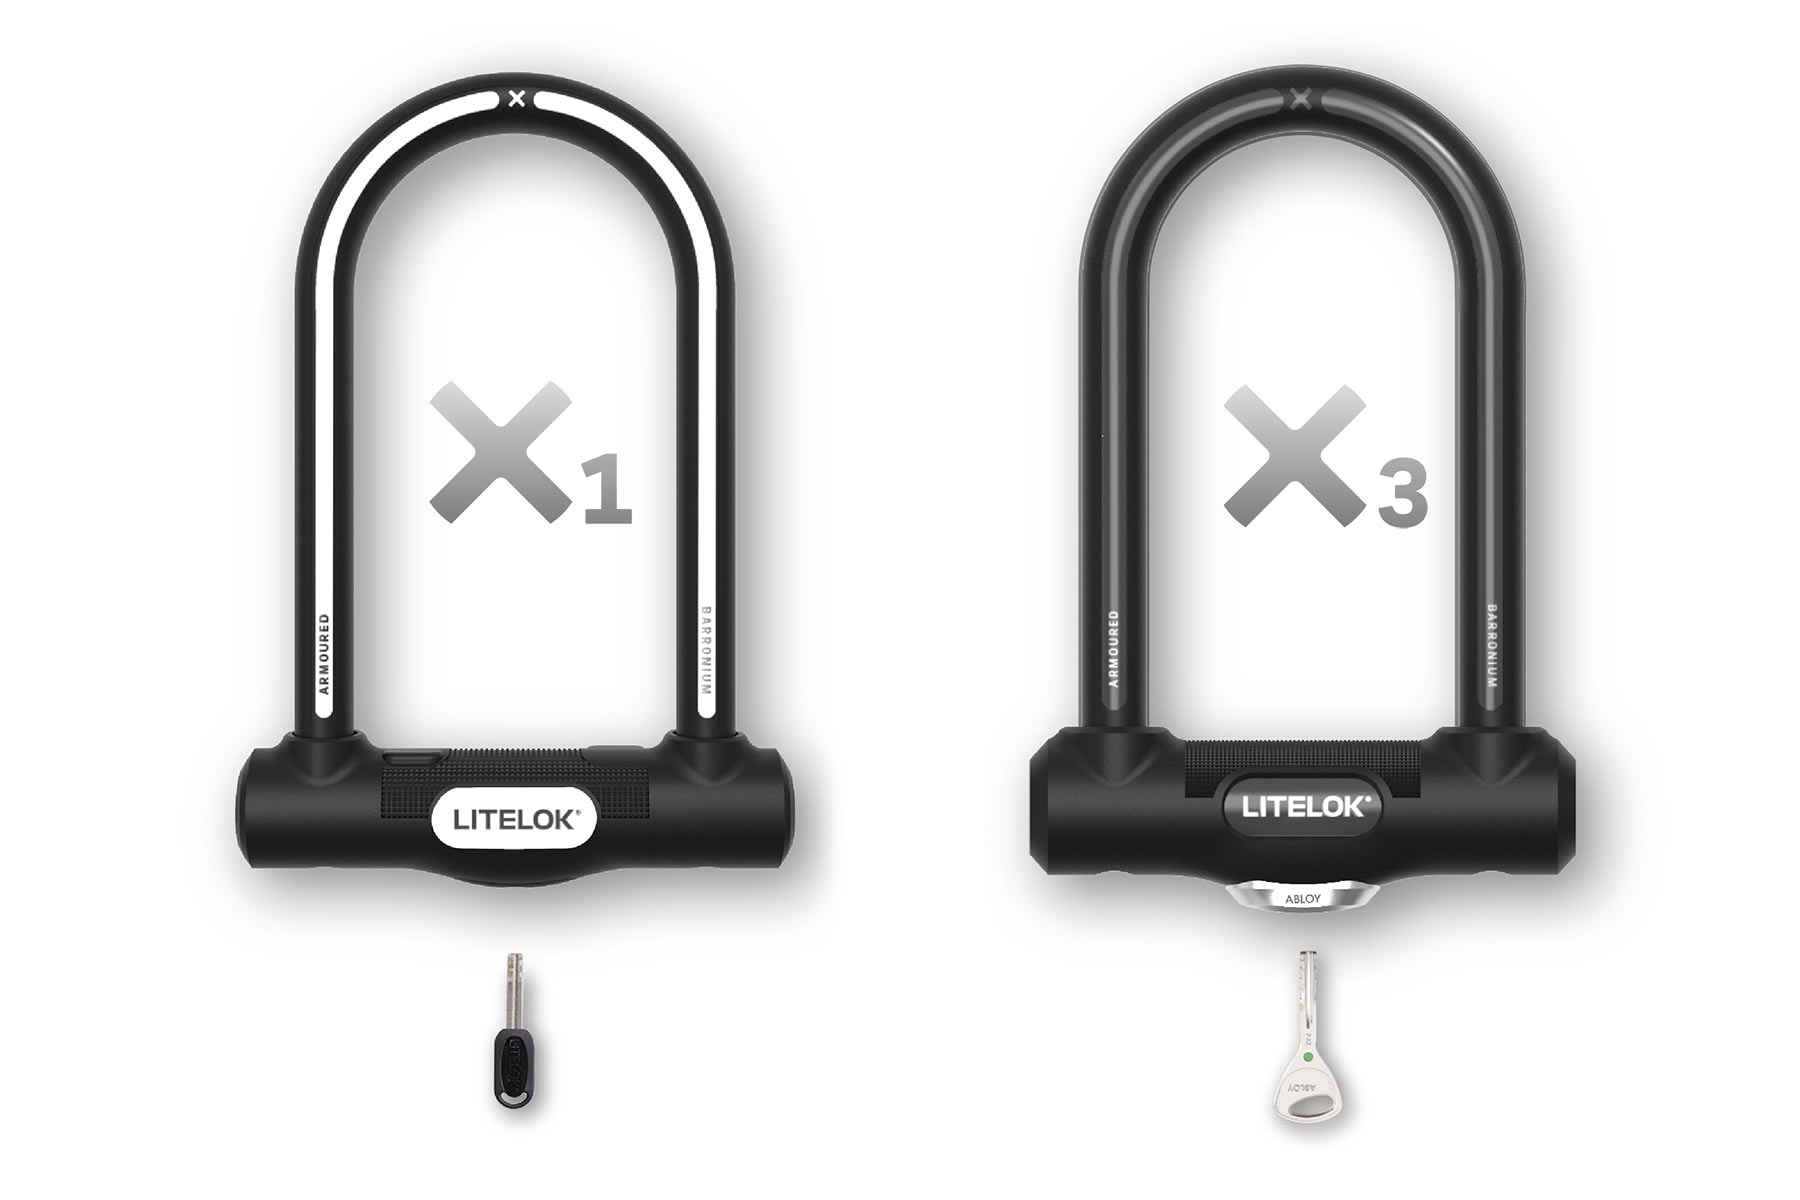 Litelok X lightweight theft-resistant Barronium bike lock, U-lock D-lock, X1 & X3 options